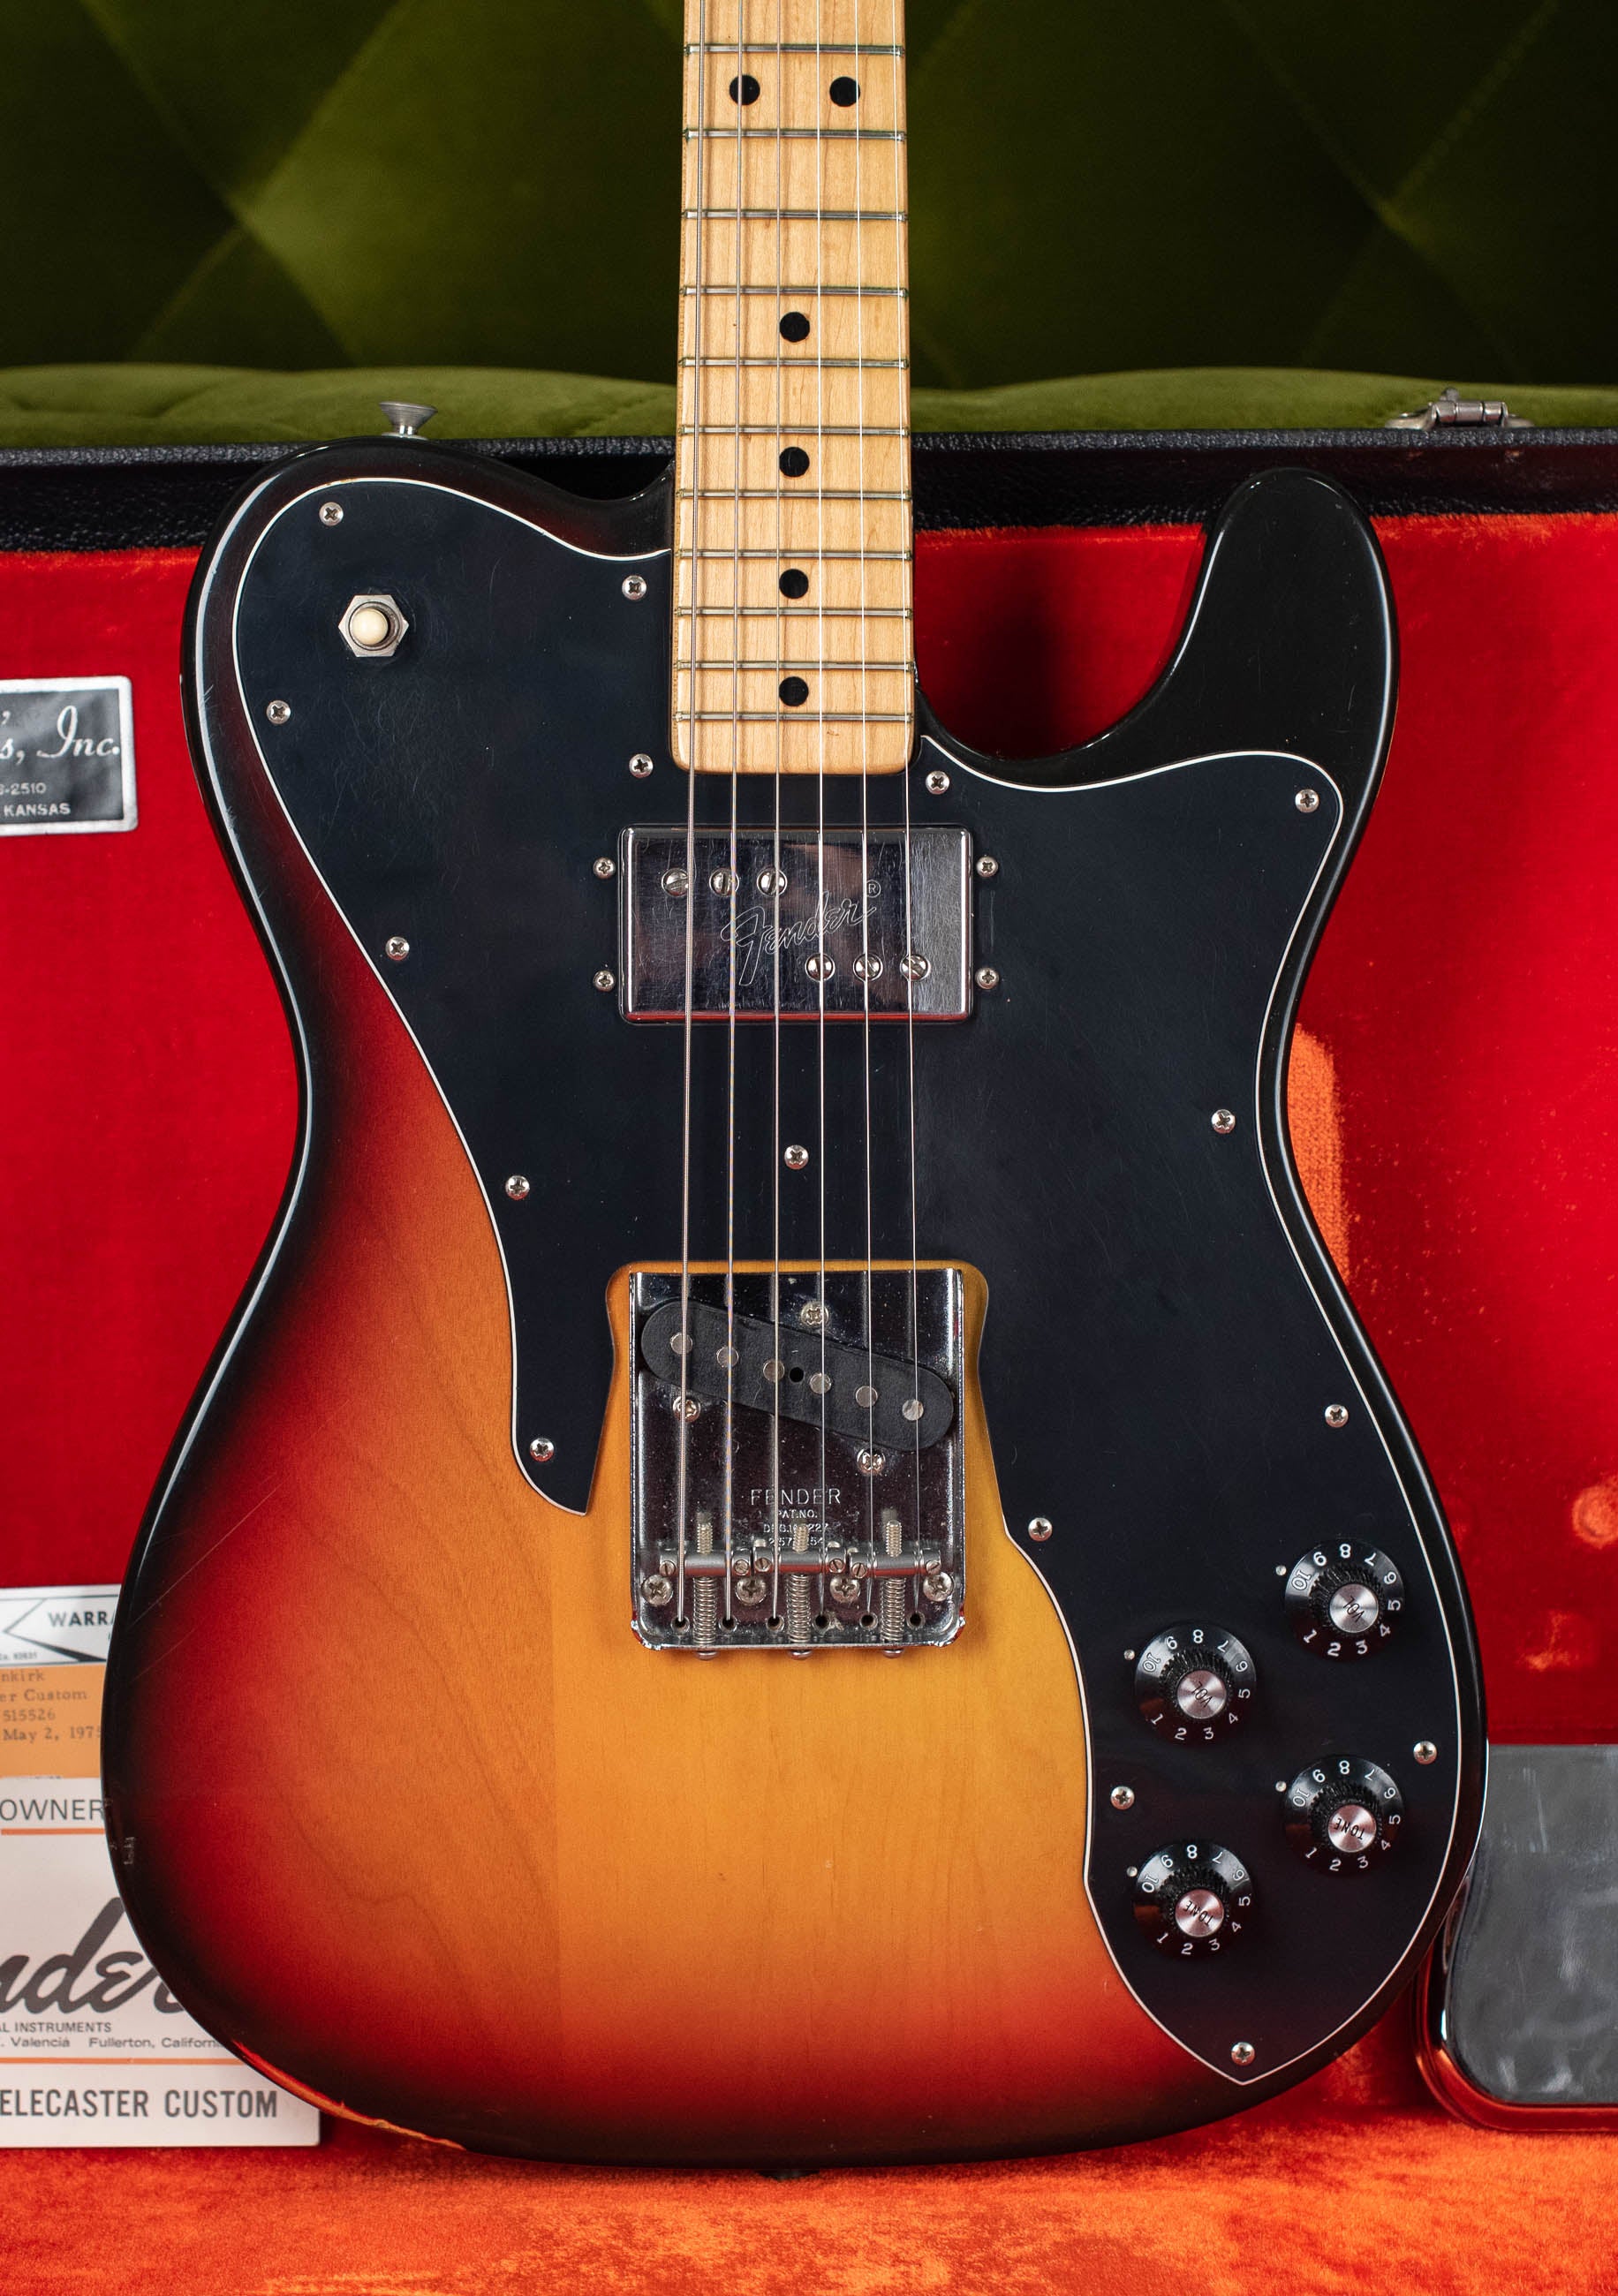 Vintage Fender Telecaster Custom electric guitar 1970s